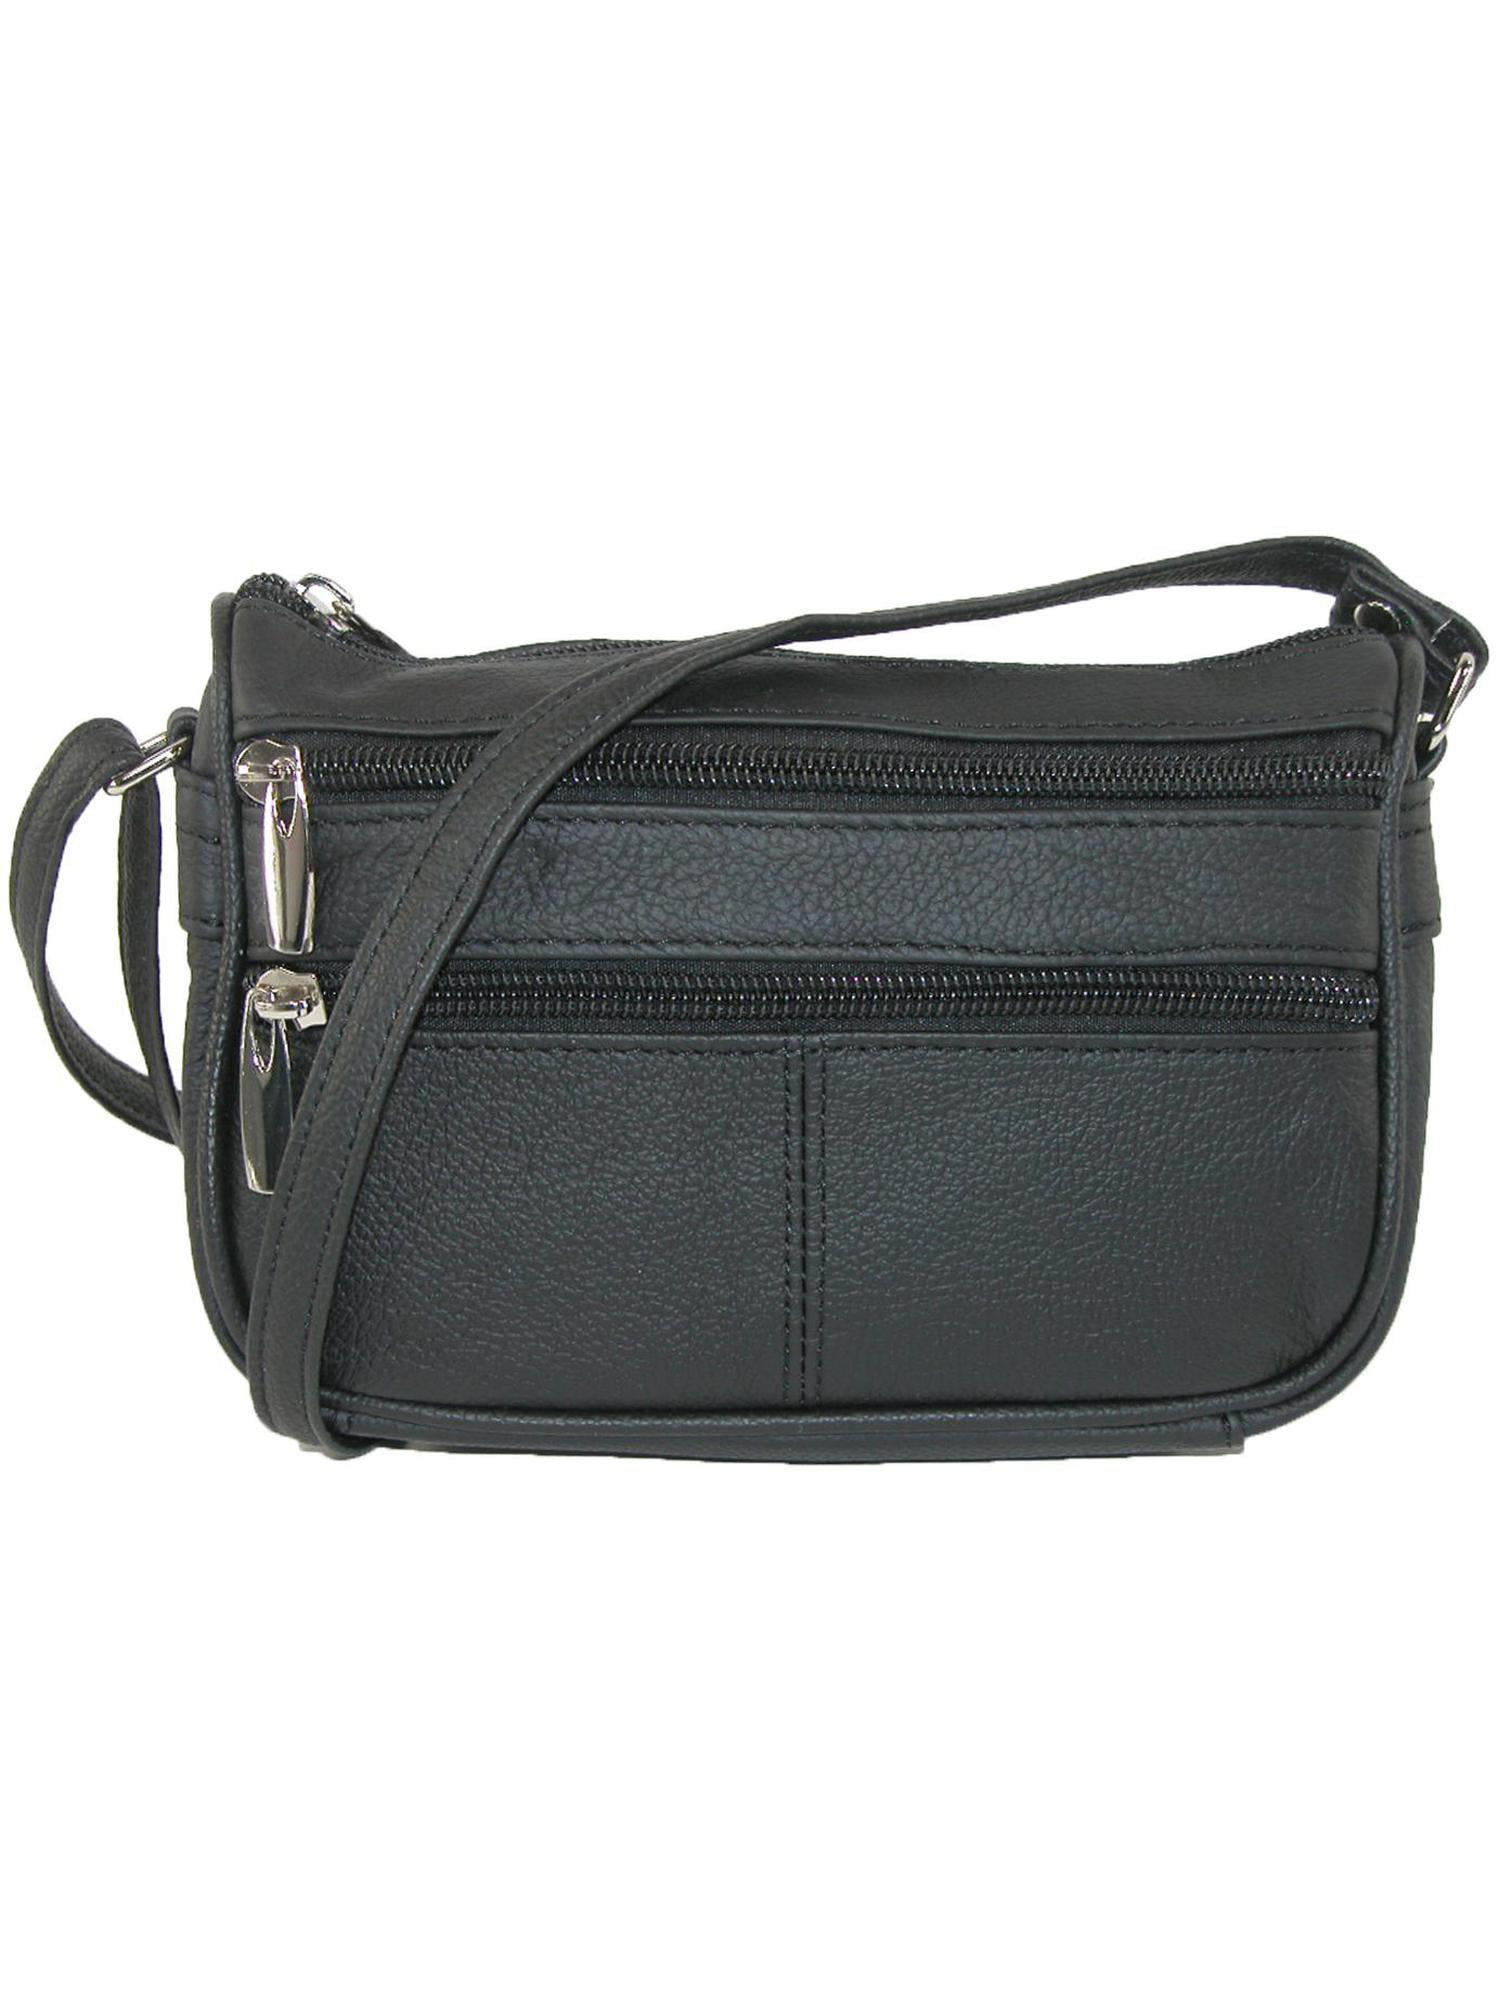 Unisex Cross Body Over Shoulder Large Holliday Travel Side Bag Black Adjustable 